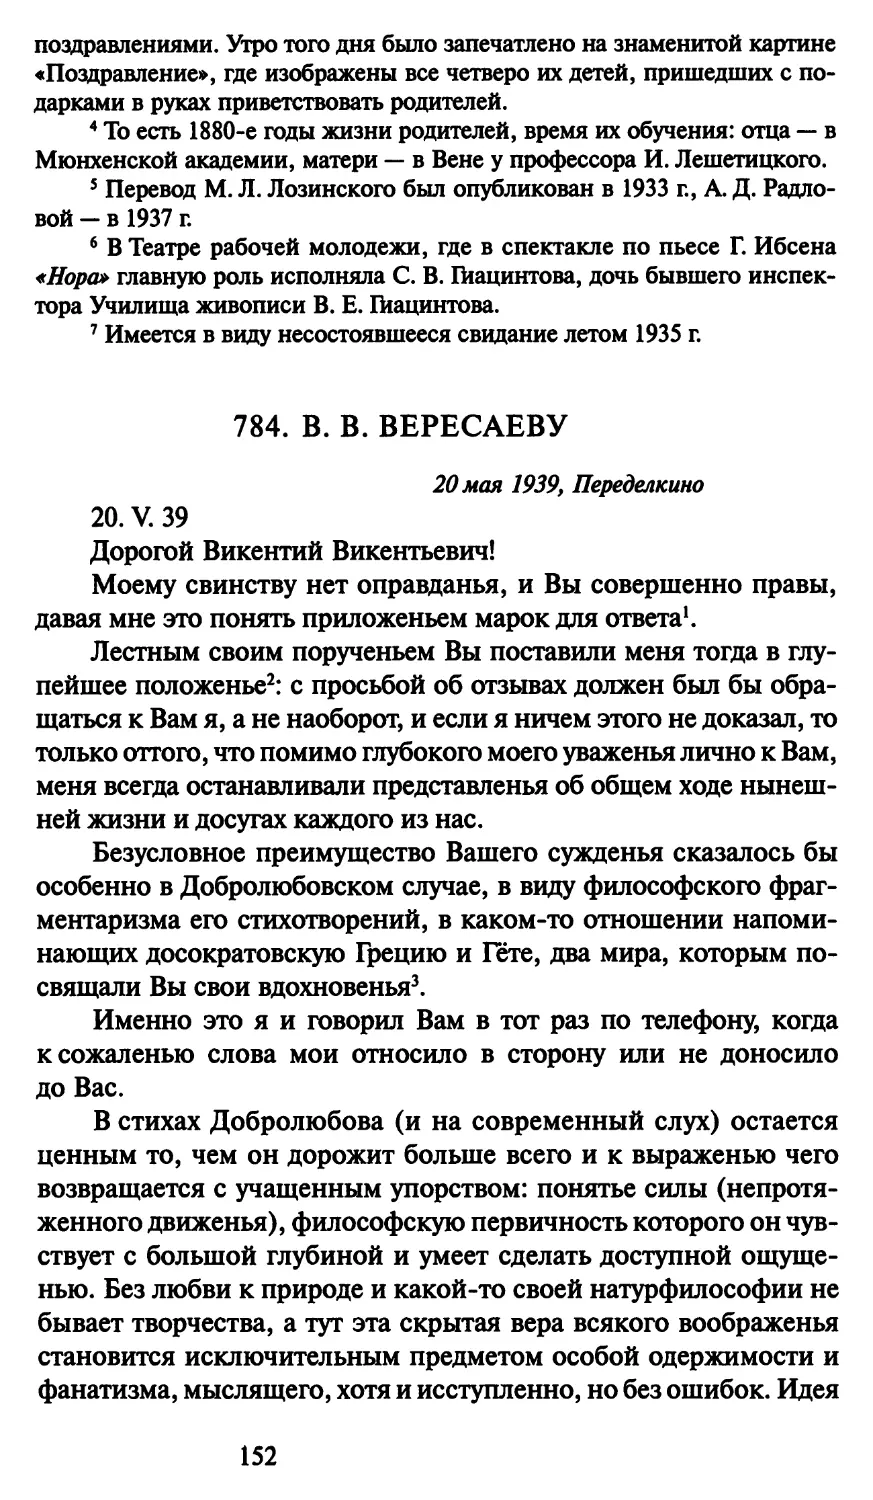 784. В. В. Вересаеву 20 мая 1939